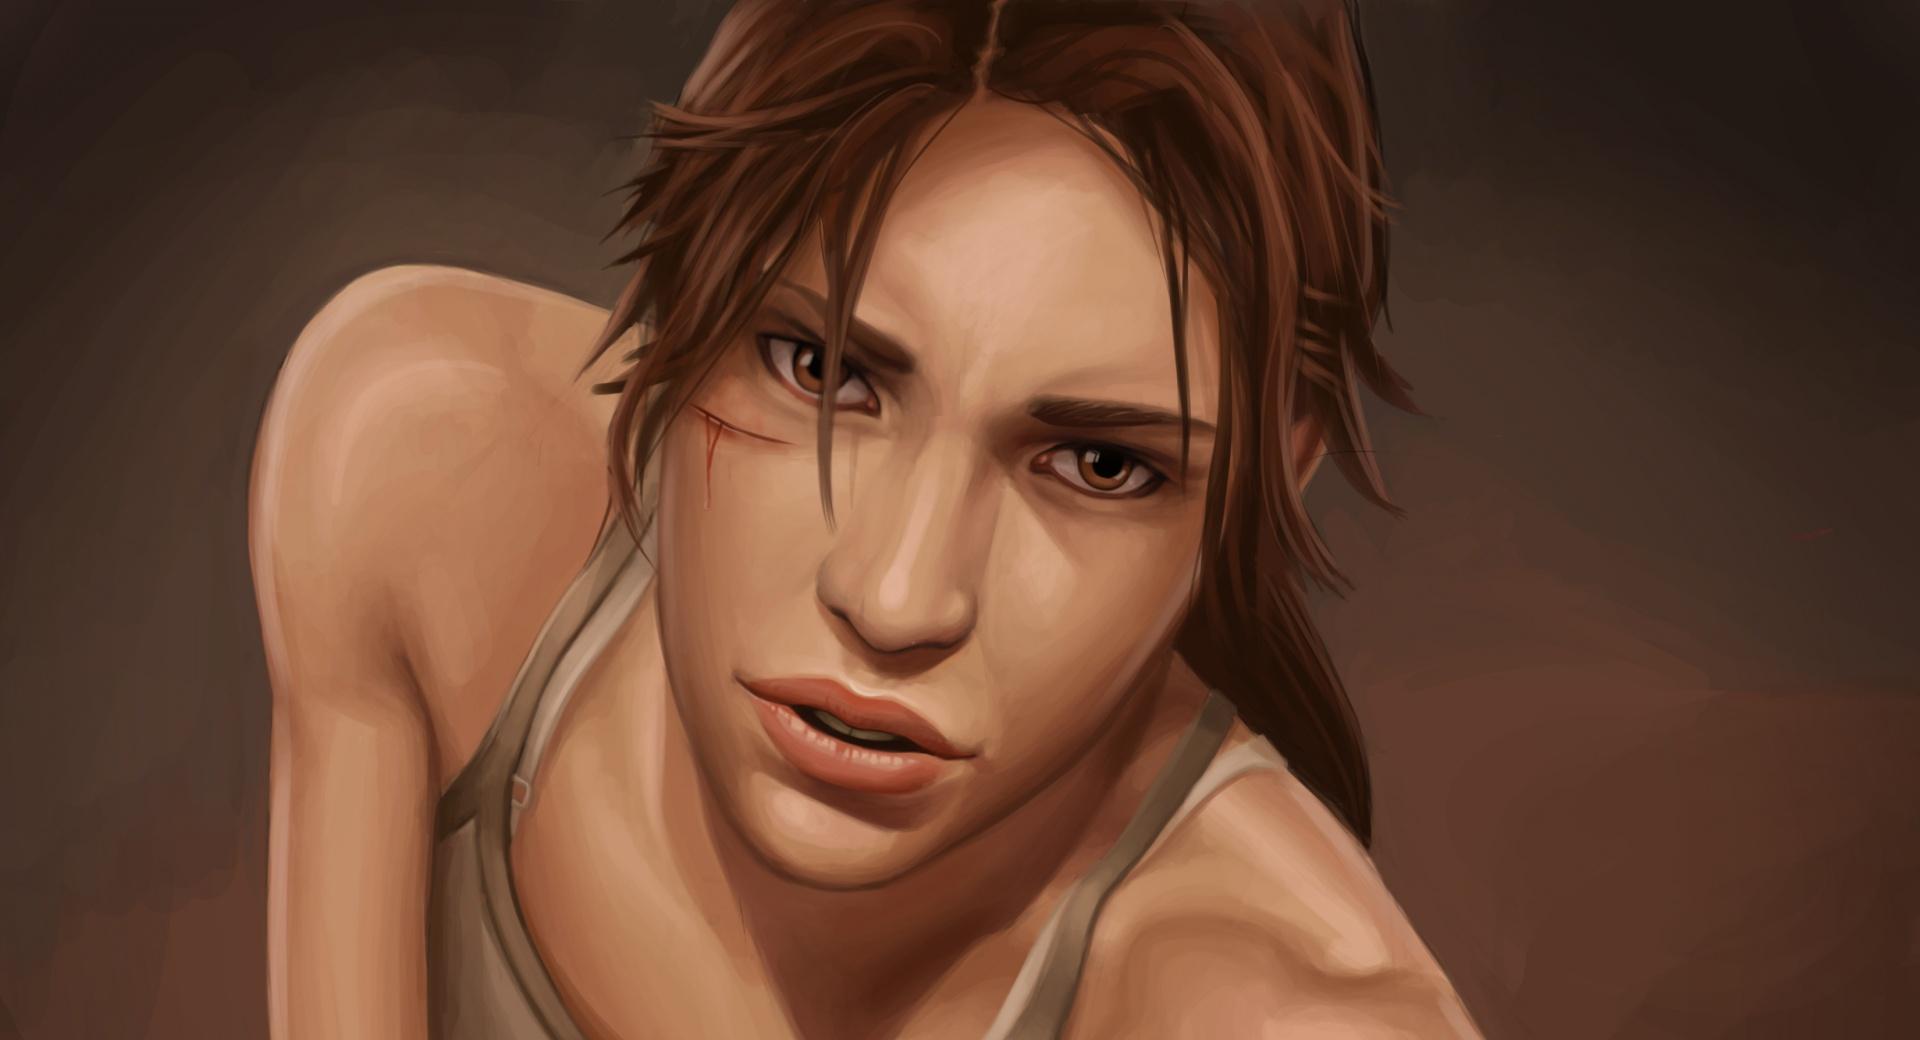 Tomb Raider 2012 Lara Croft at 2048 x 2048 iPad size wallpapers HD quality